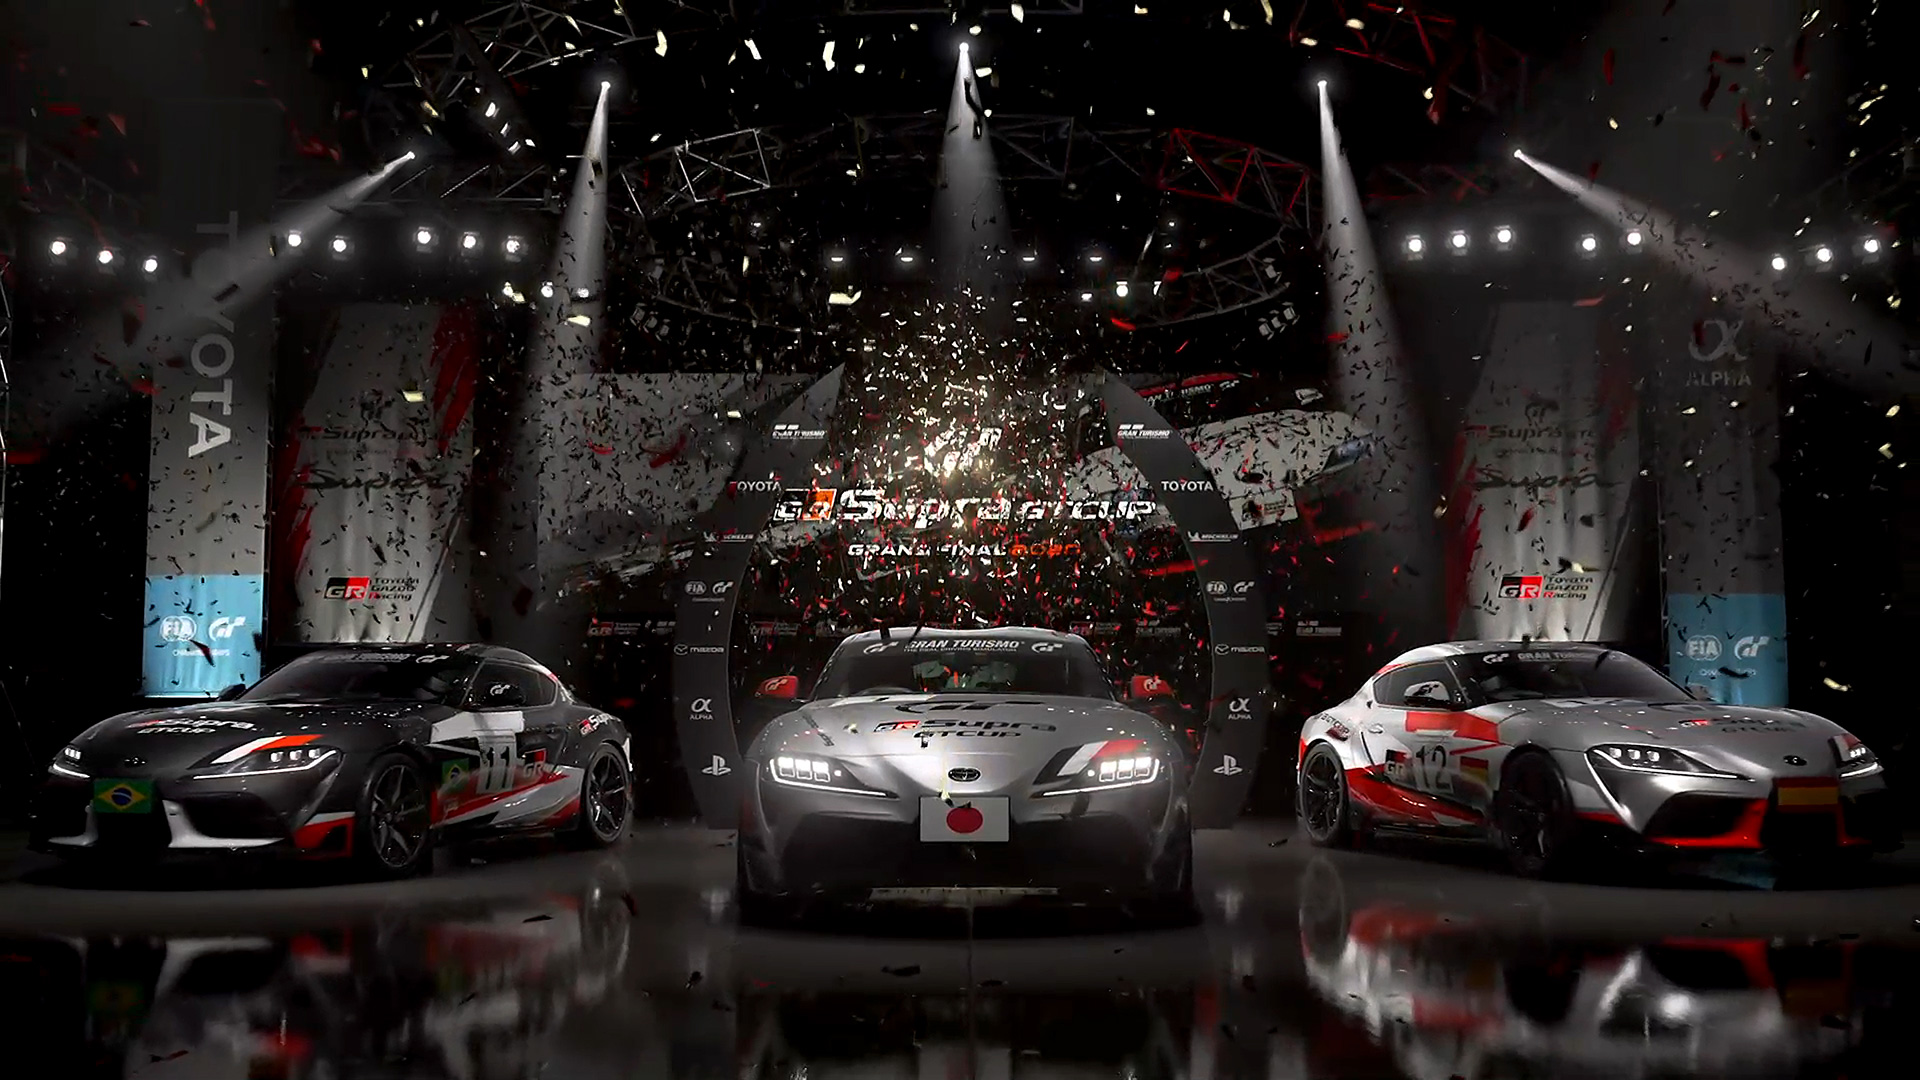 Campanha de Gran Turismo 7 coloca super automóveis em São Paulo - tudoep